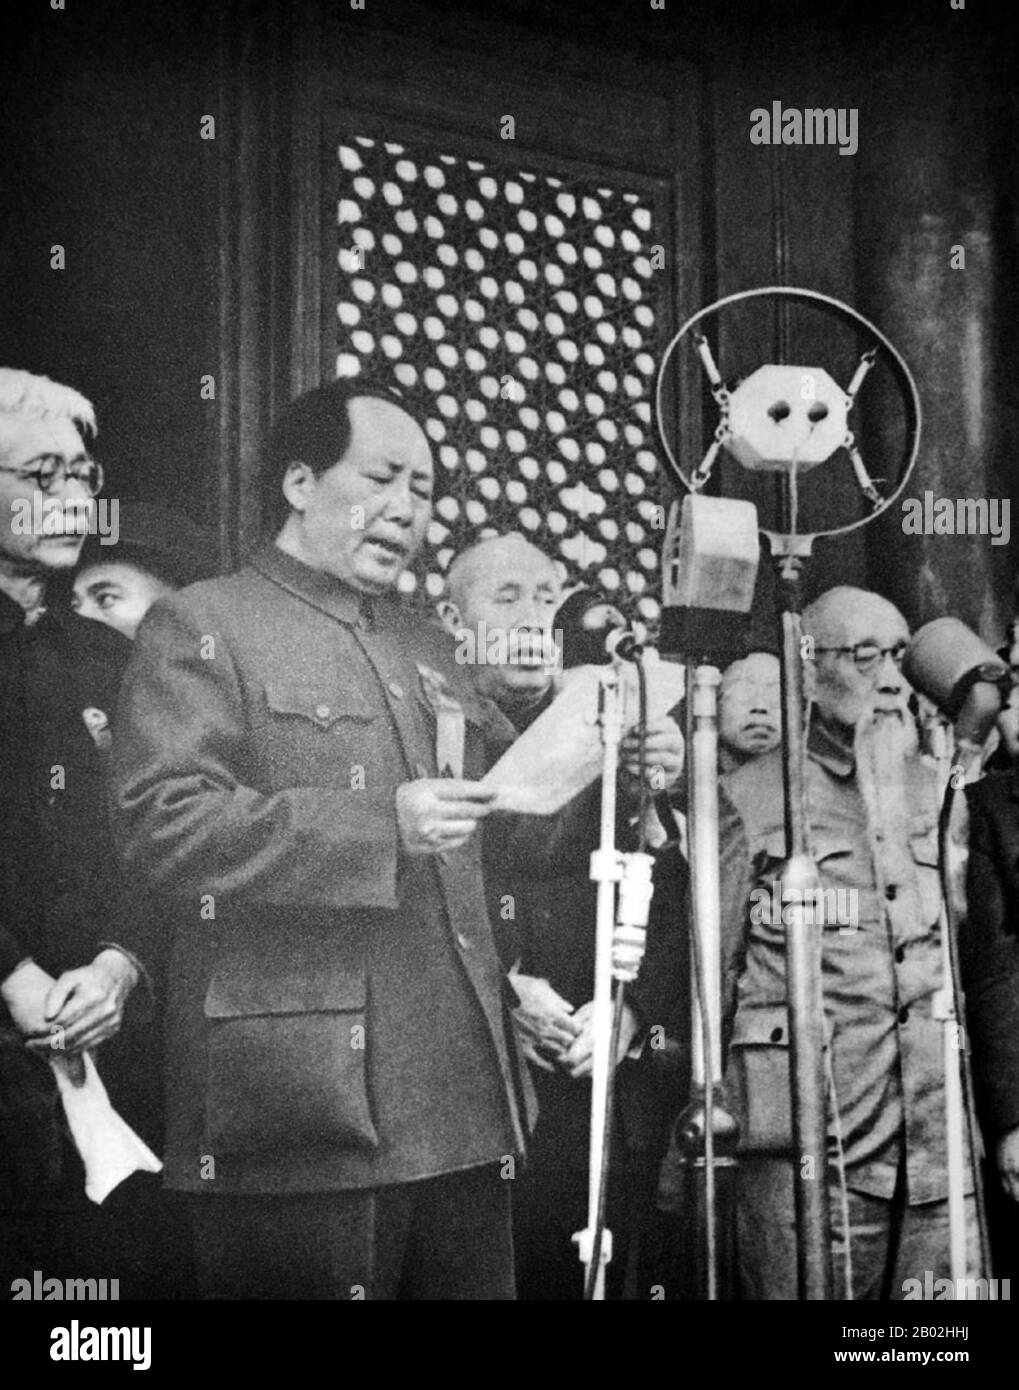 Mao Zedong, auch als Mao Tse-tung (26. Dezember 1893 - 9. September 1976) transliteriert, war ein chinesischer kommunistischer Revolutionär, Guerilla-Kampfstratege, Autor, politischer Theoretiker und Führer der chinesischen Revolution. Er wurde im Allgemeinen als Chairman Mao bezeichnet und war der Architekt der Volksrepublik China (PRC) von ihrer Gründung im Jahr 1949 an und hatte bis zu seinem Tod im Jahr 1976 die autoritäre Kontrolle über die Nation inne. Maos theoretischer Beitrag zum Marxismus-Leninismus, zusammen mit seinen militärischen Strategien und der Marke der politischen Politik, werden heute gemeinsam als Maoismus bezeichnet. Stockfoto